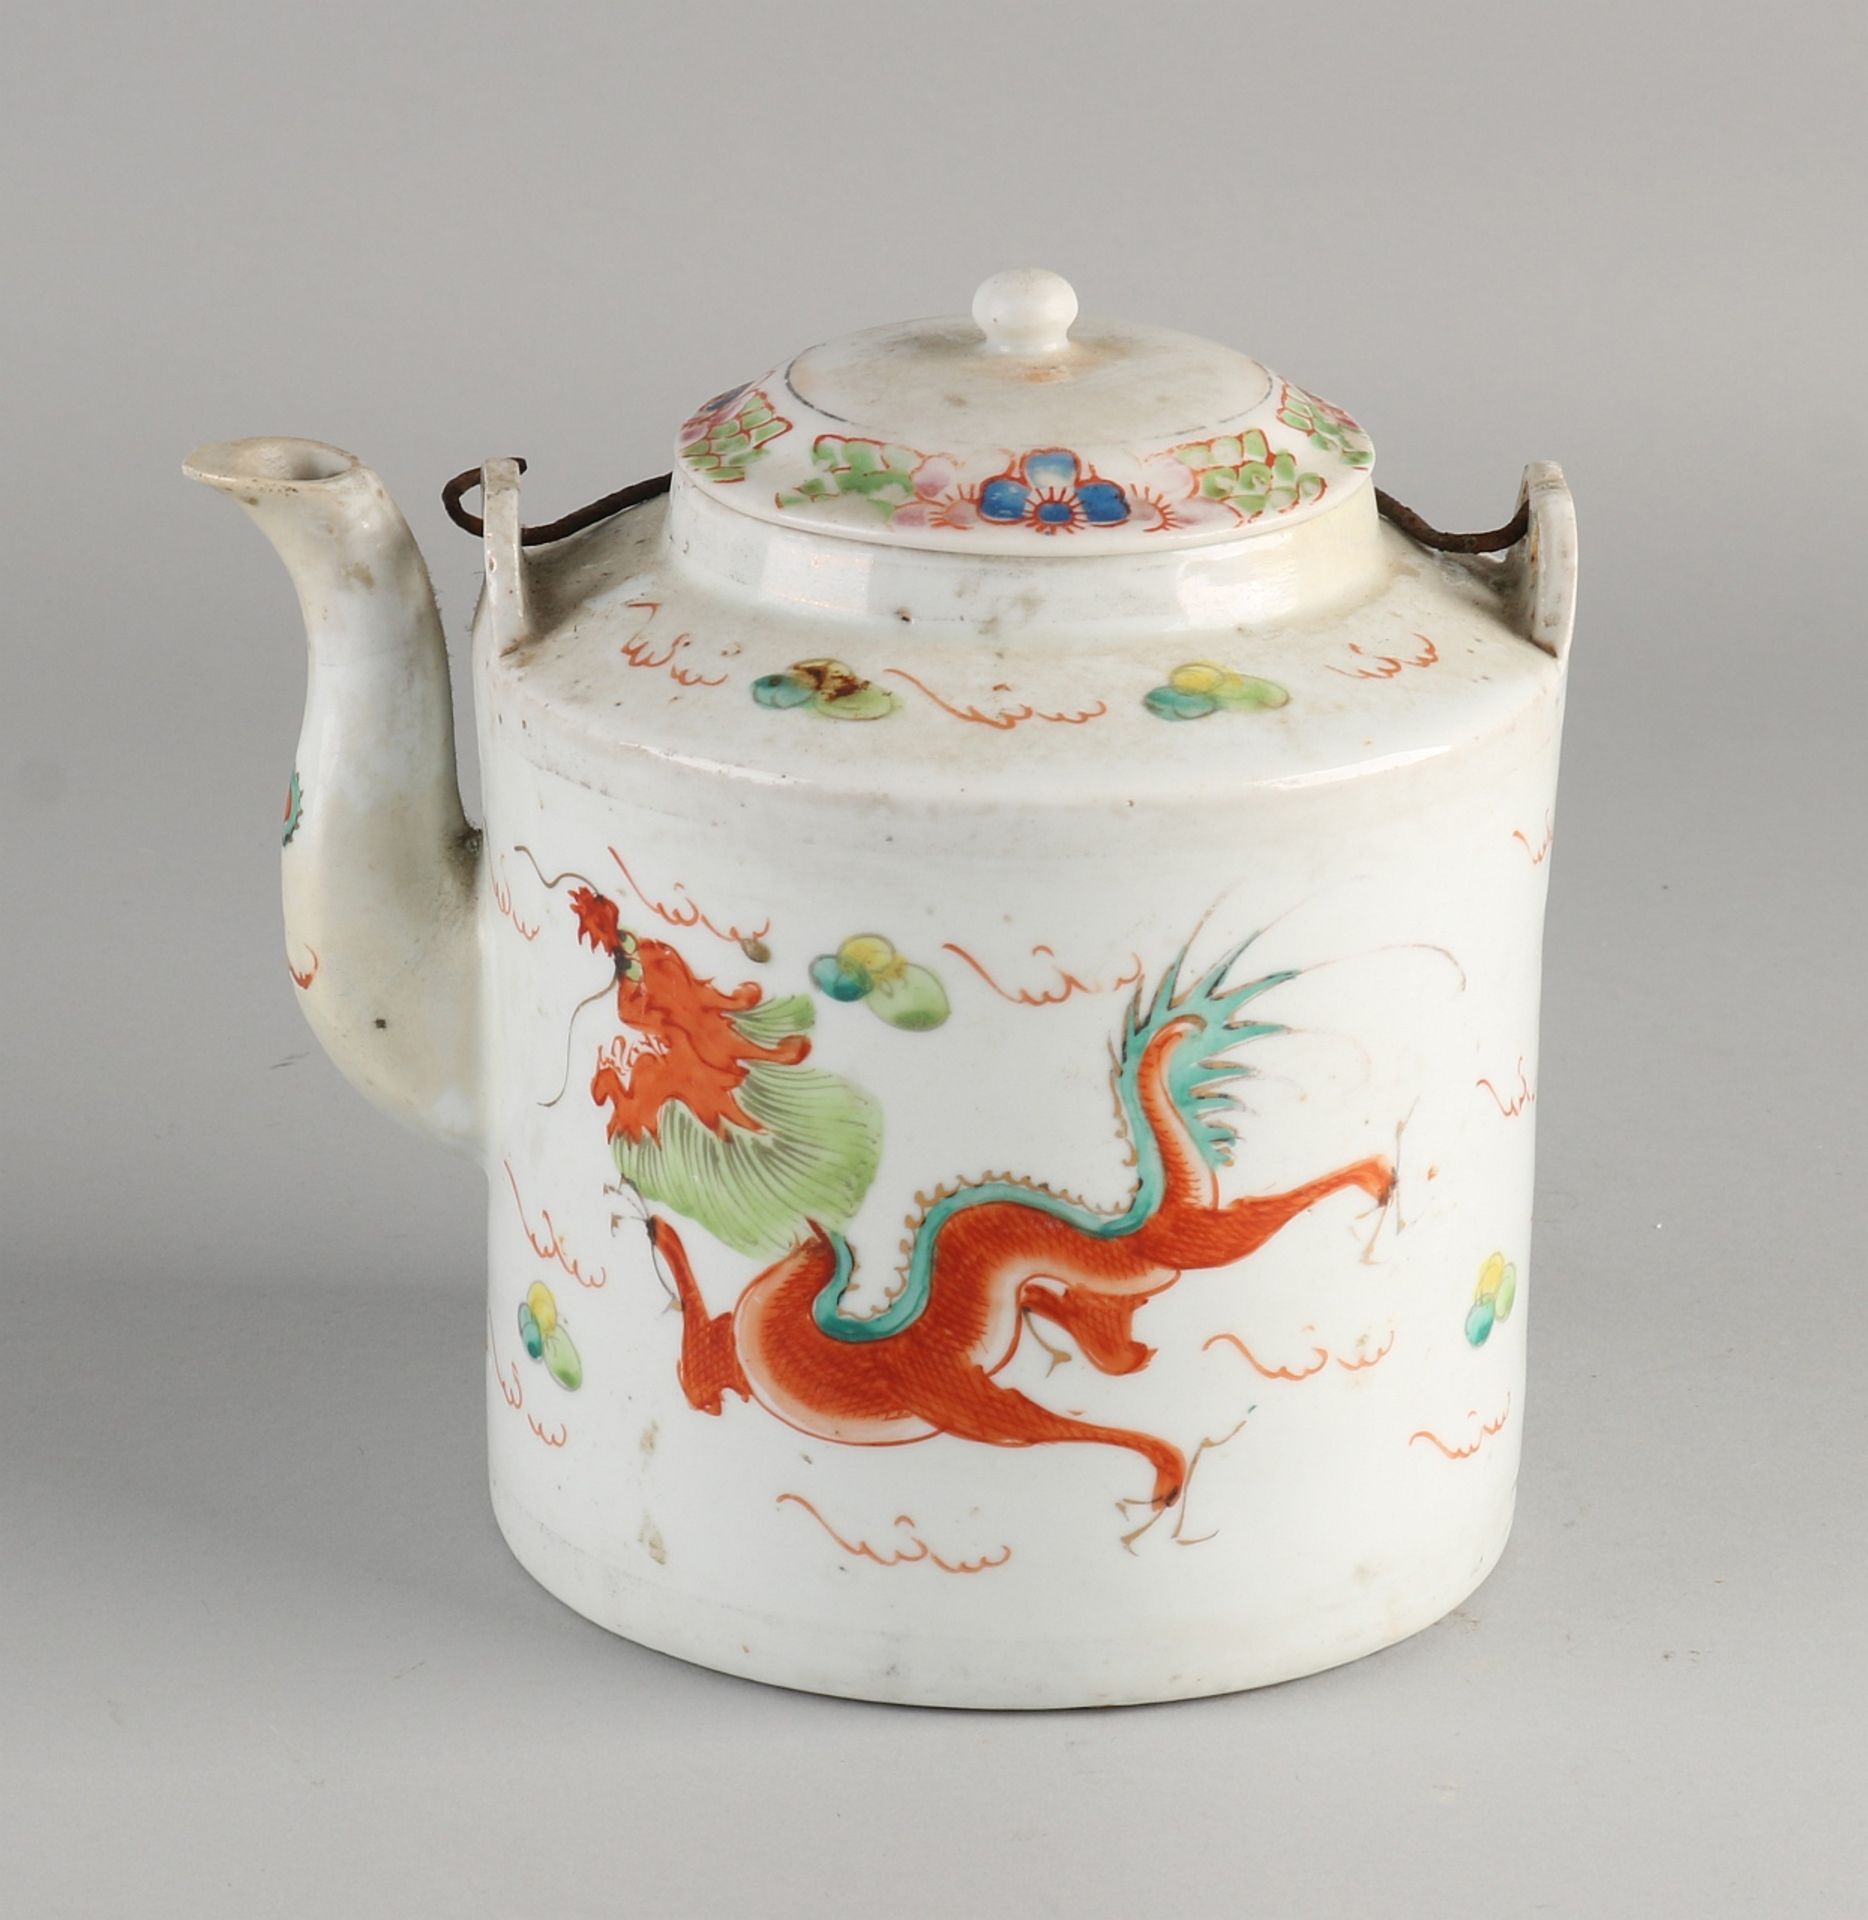 Große chinesische Porzellanteekanne aus dem 19. Jahrhundert mit Drachen- / Paradiesvogeldekoration